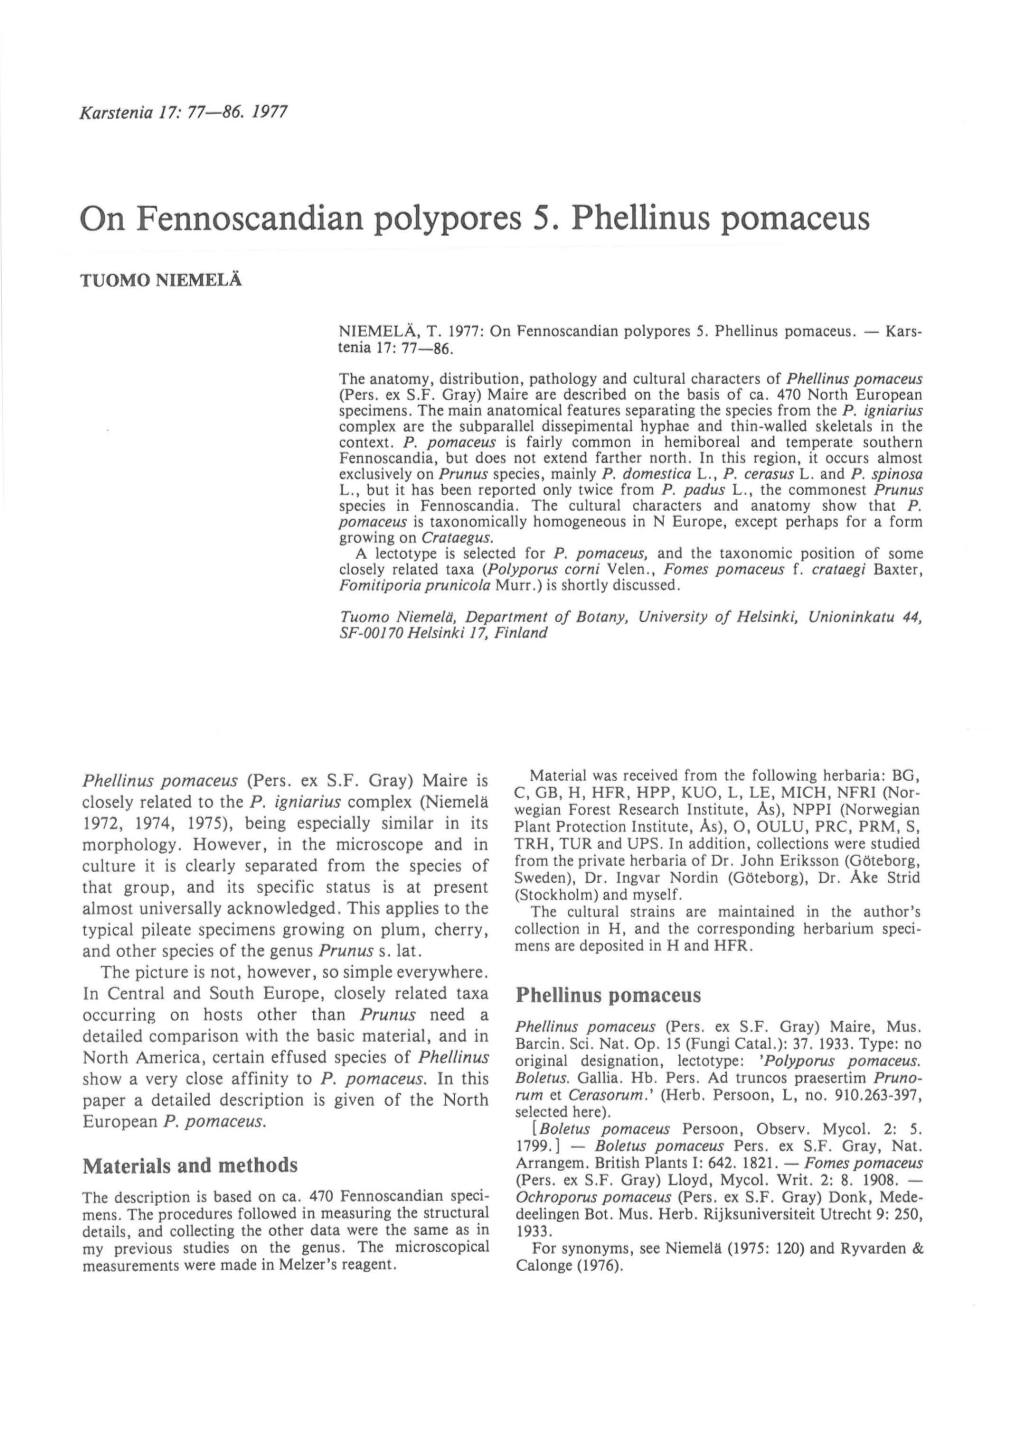 On Fennoscandian Polypores 5. Phellinus Pomaceus